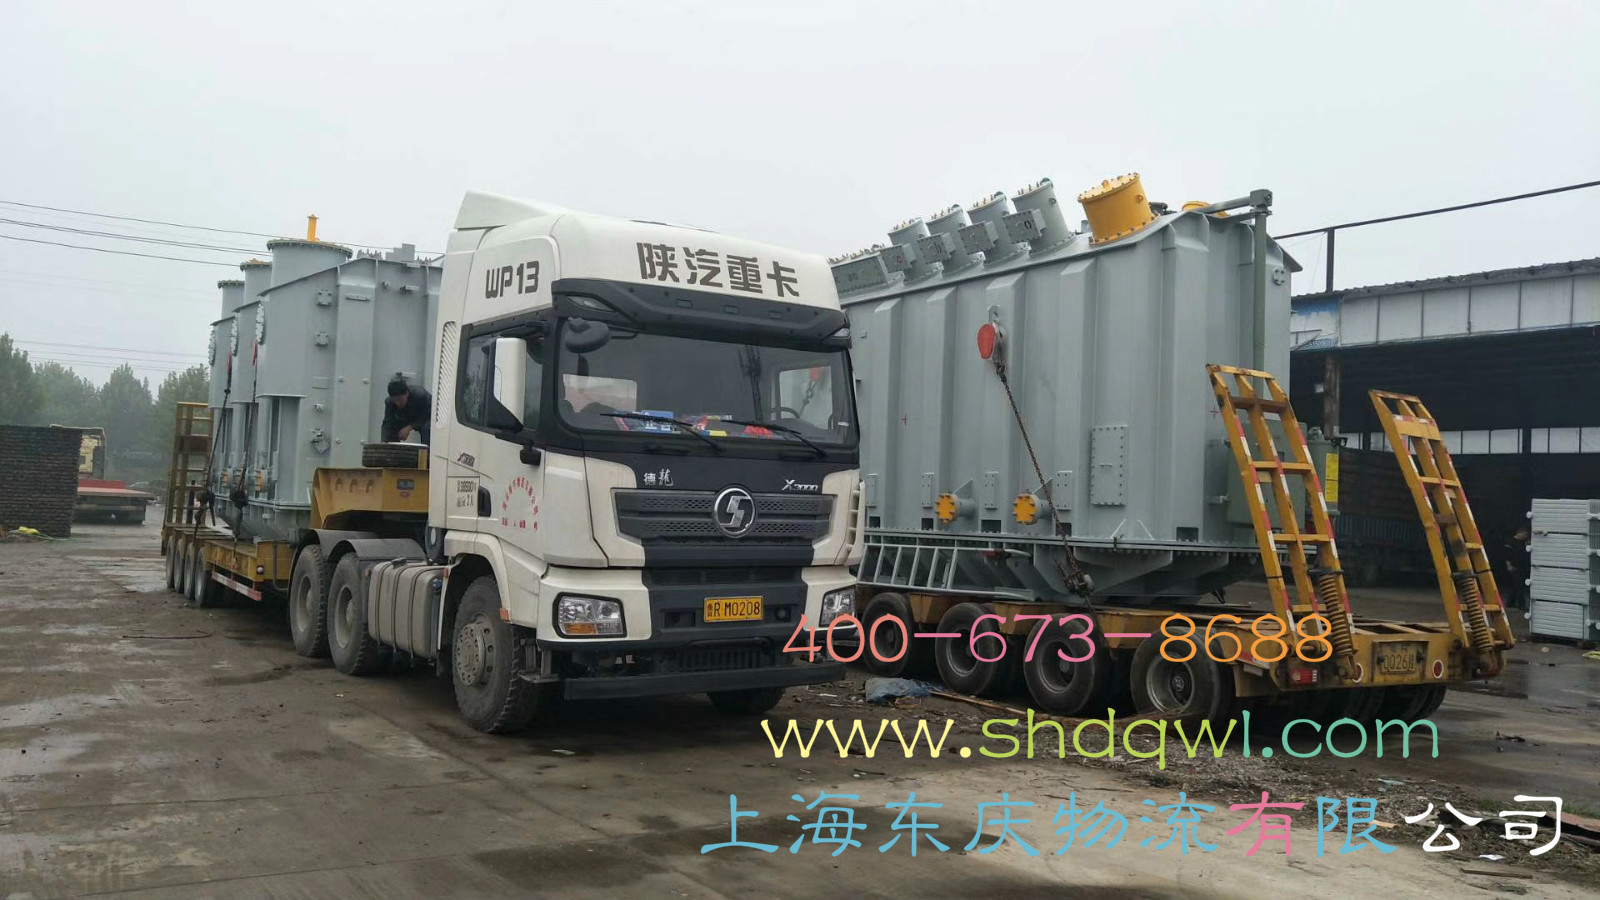 大件设备运输车辆_国际货物国内陆运方式-上海东庆物流有限公司